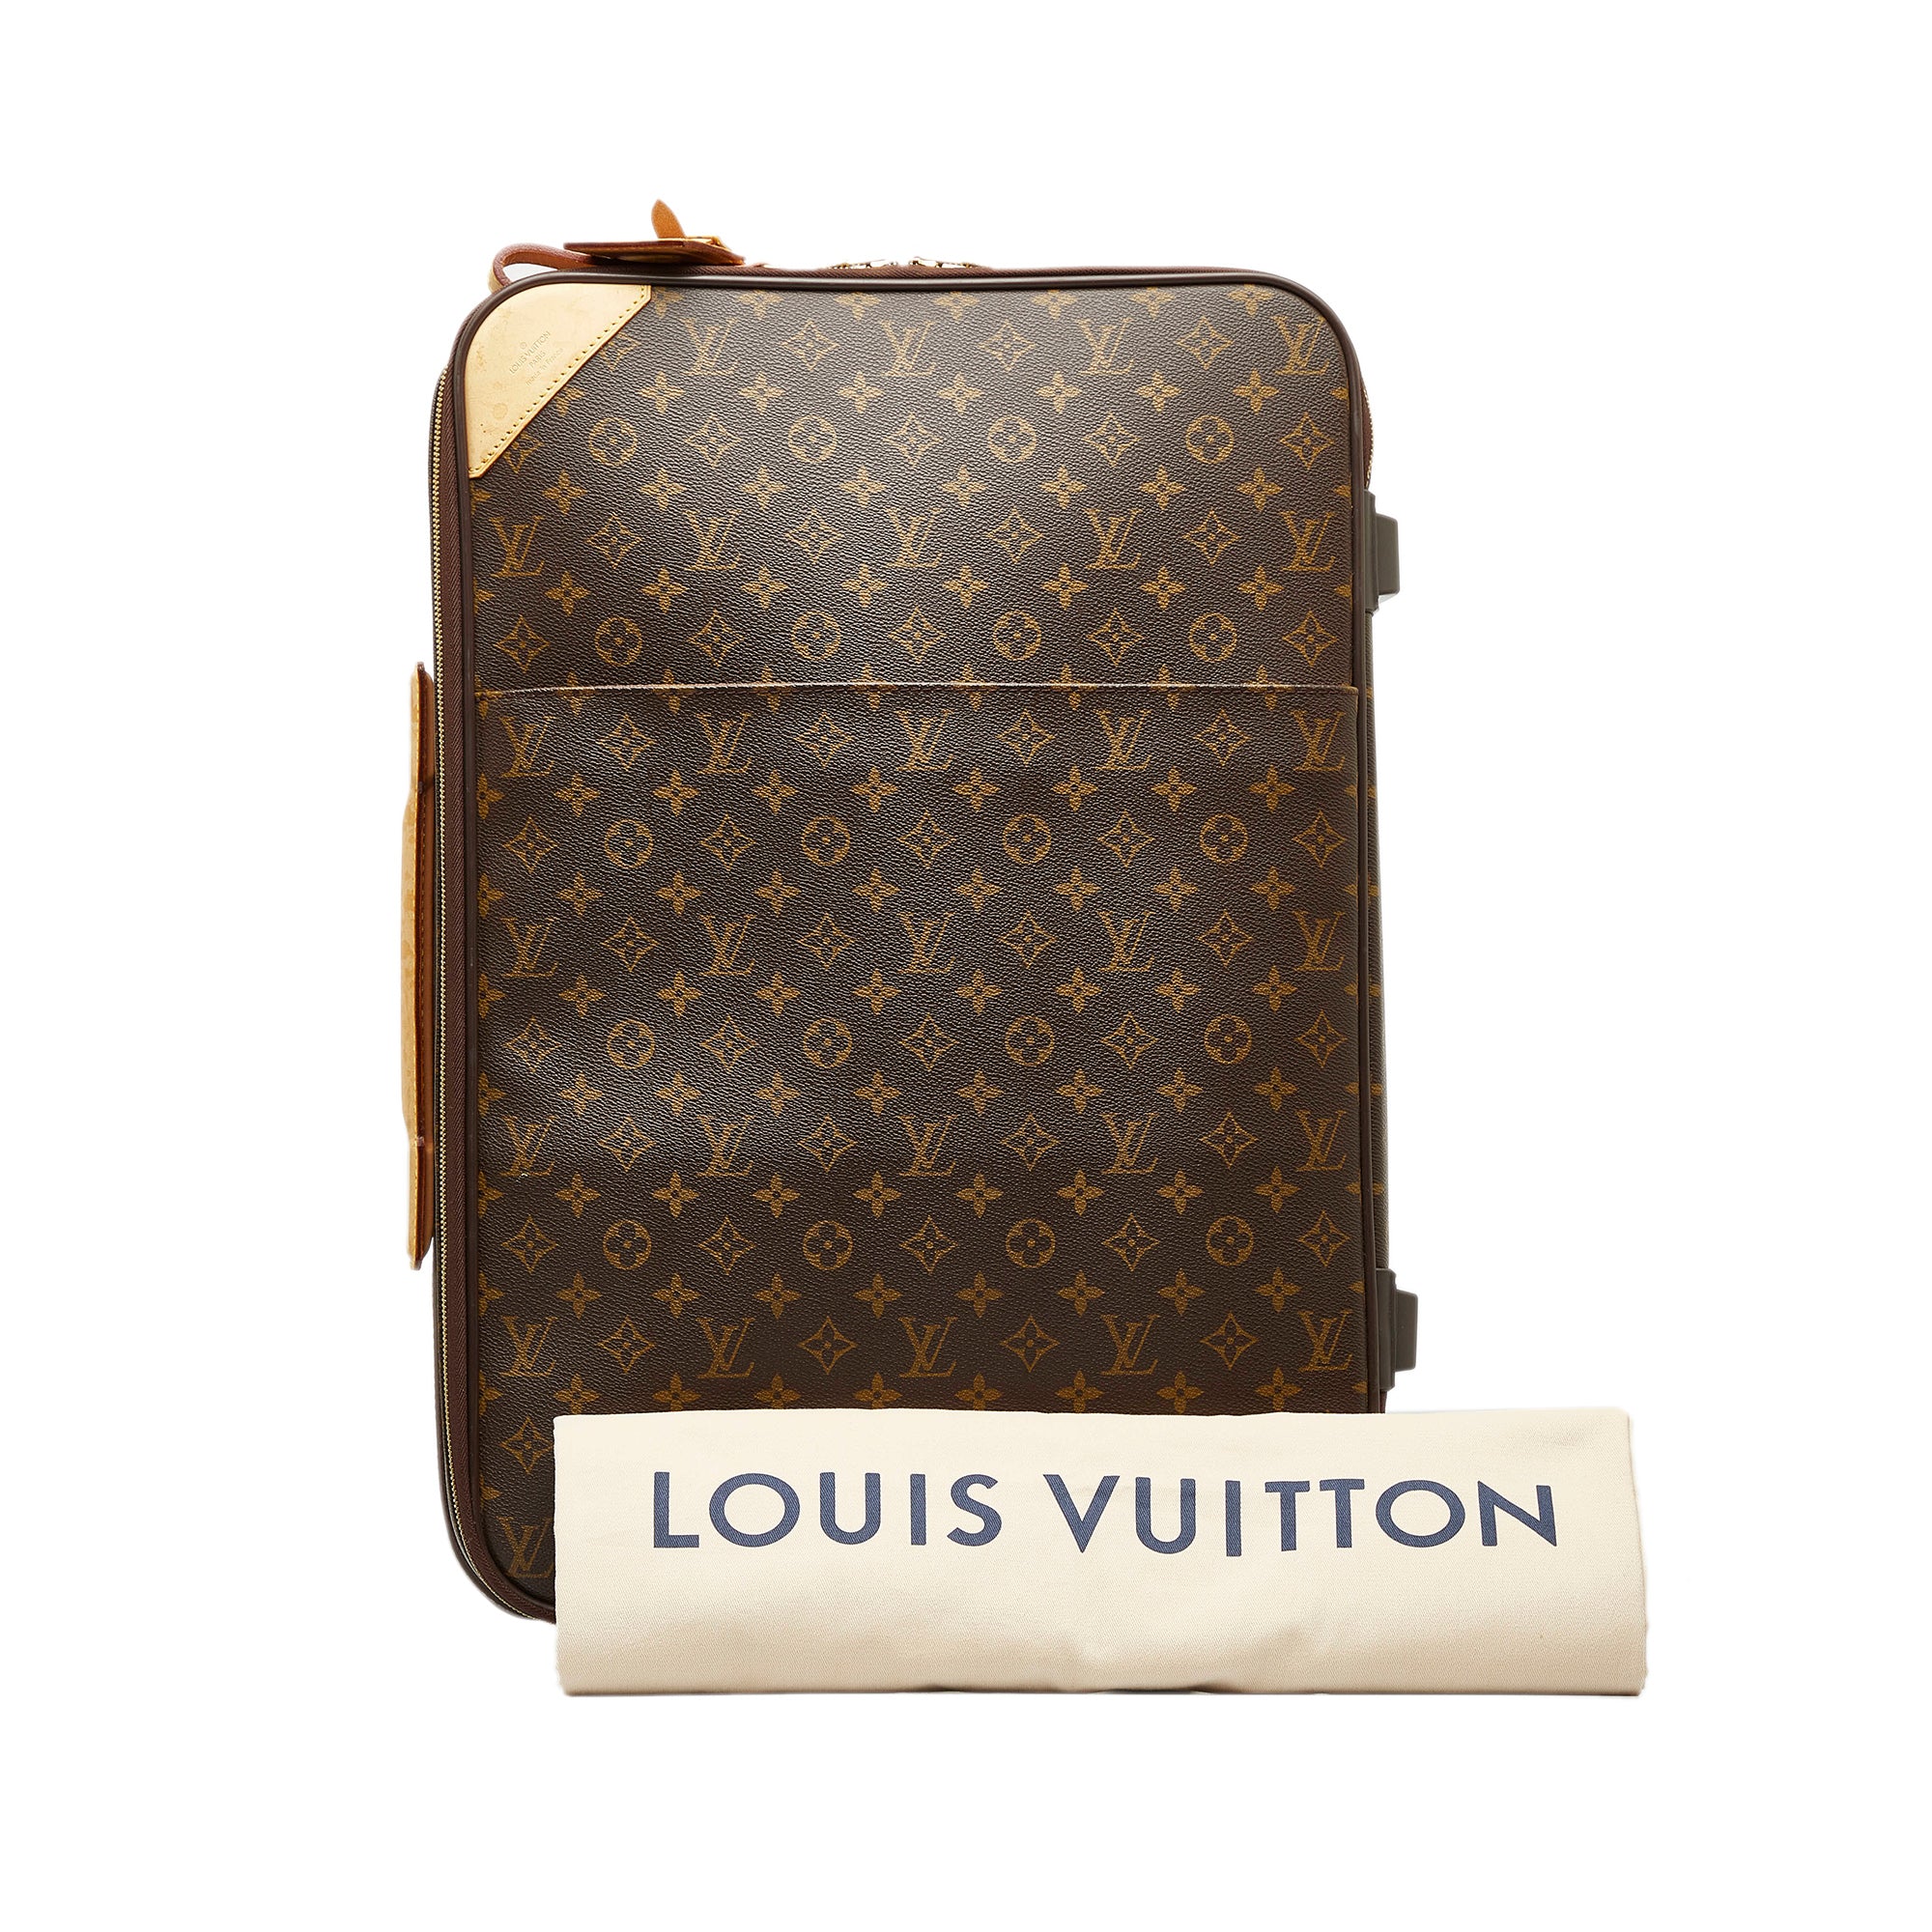 Authentic Louis Vuitton monogram Pegasus 55 Suitcase Luggage good condition